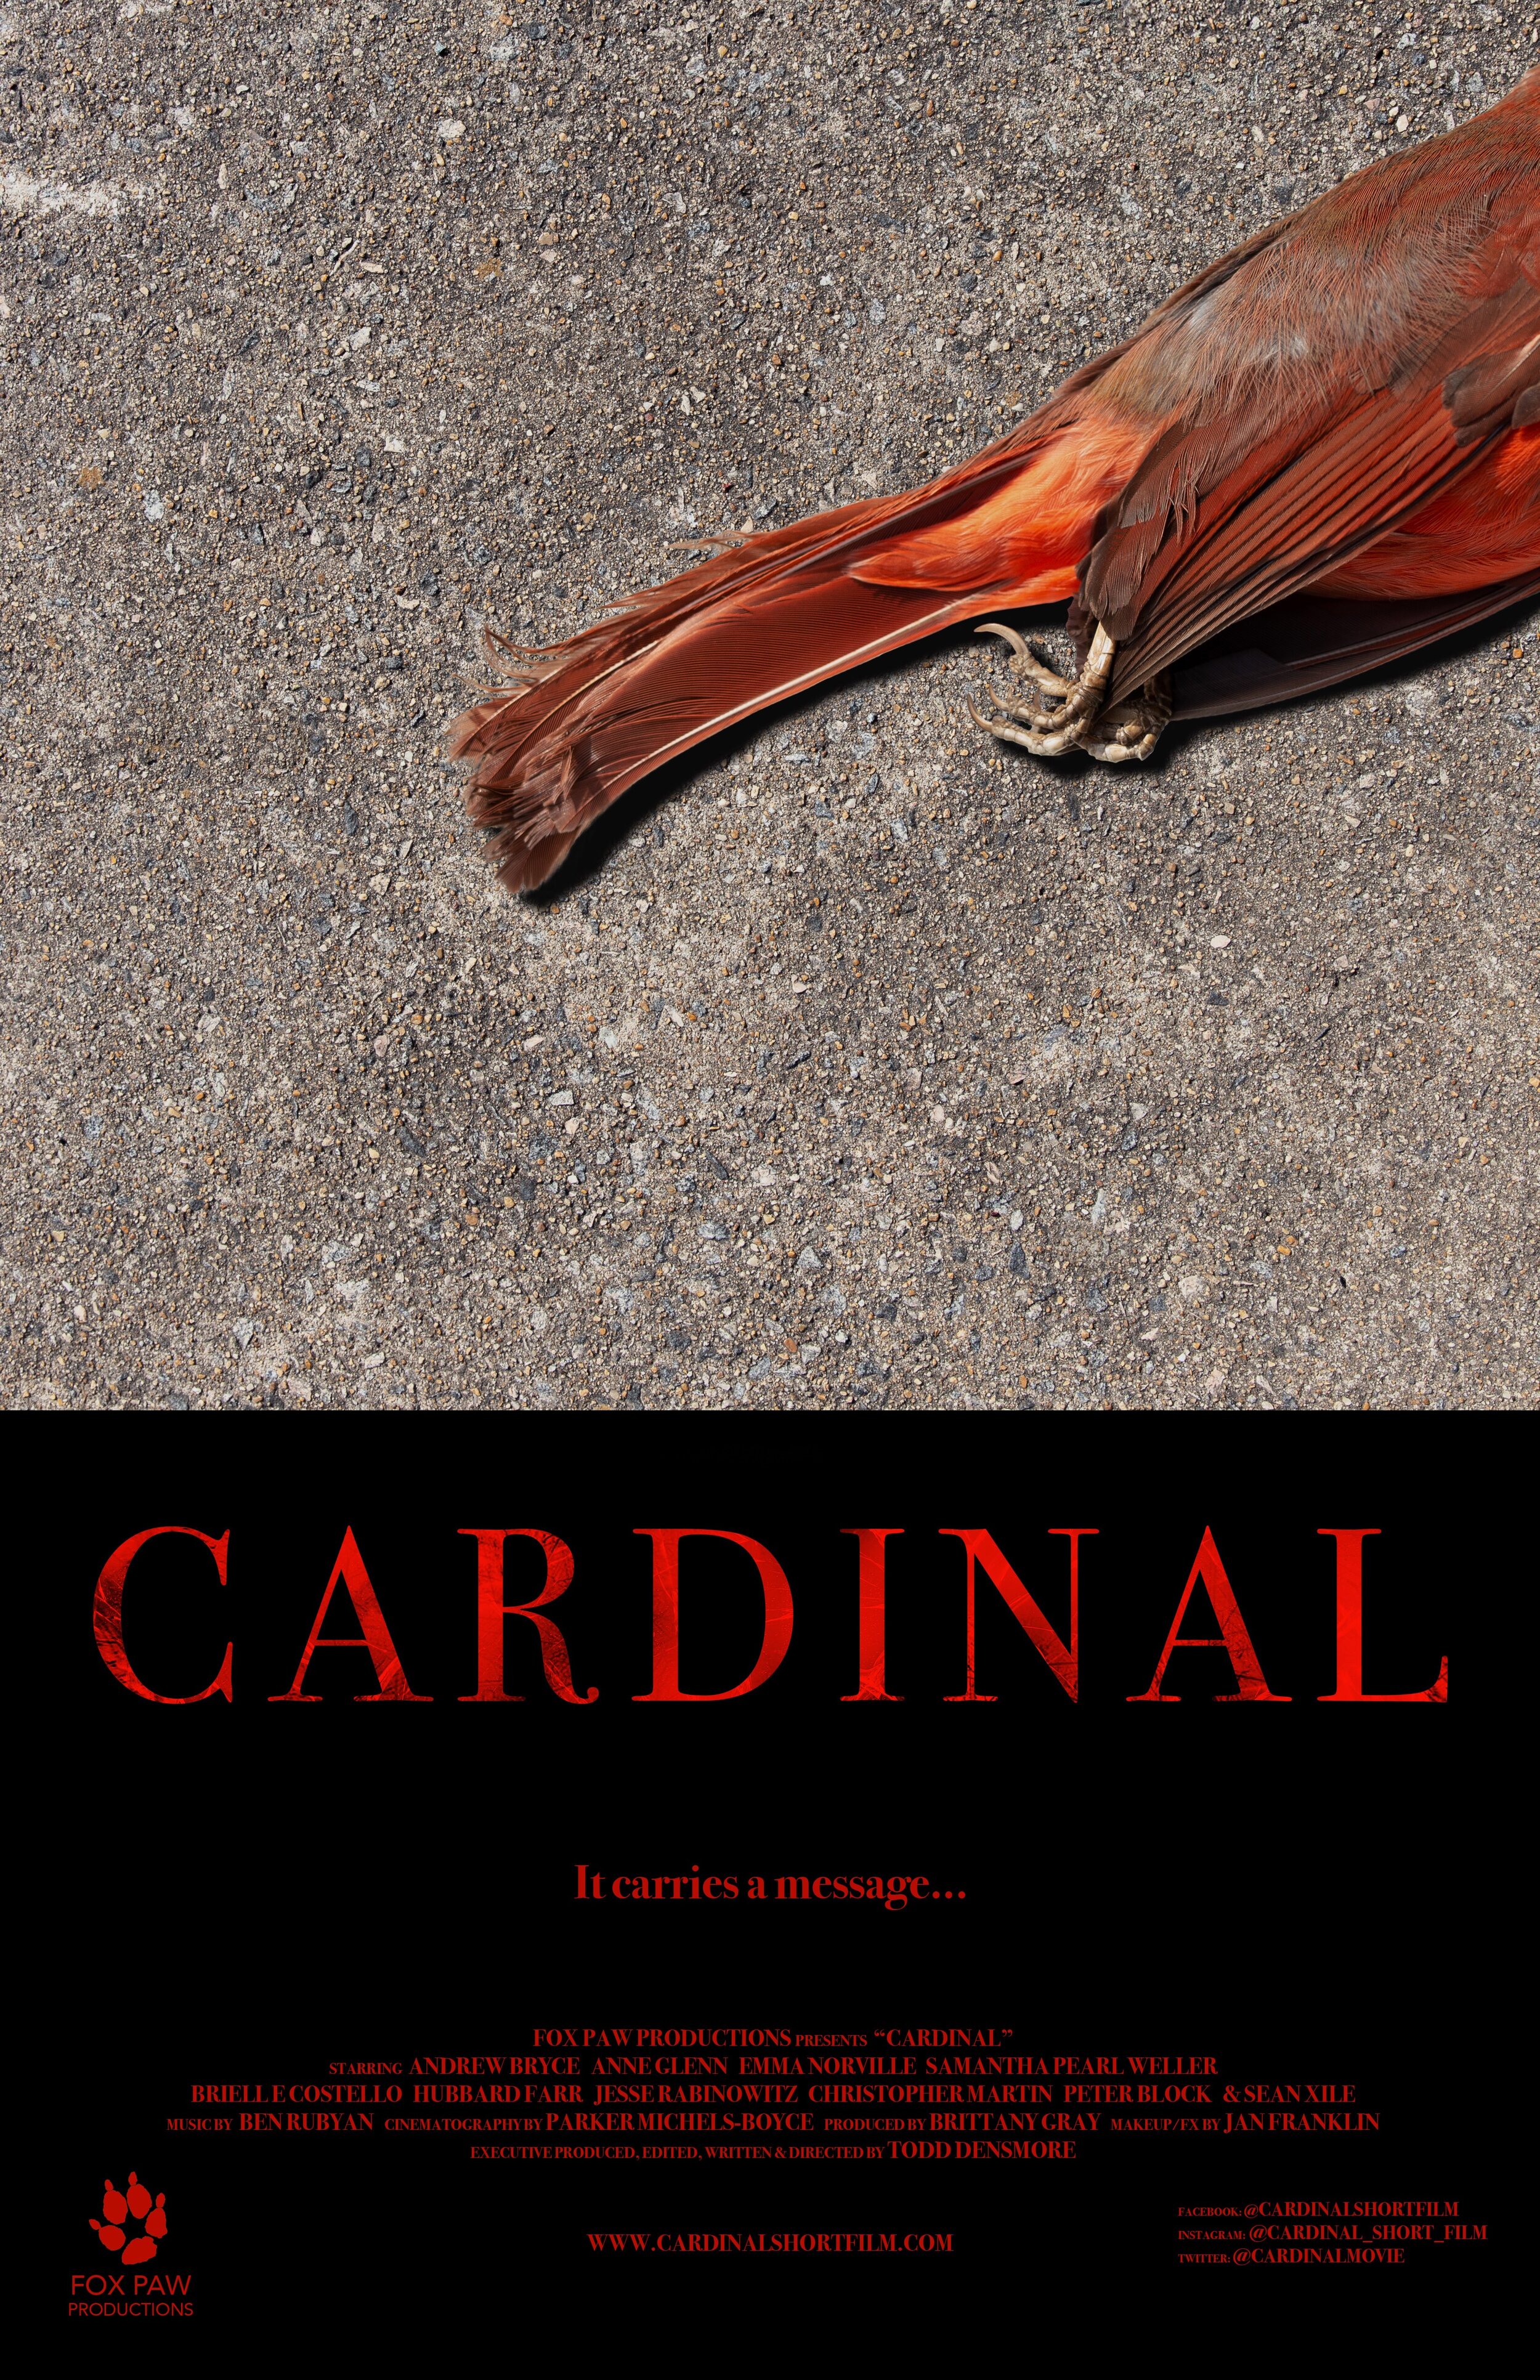 Cardinal Poster 7.21 (1).jpg